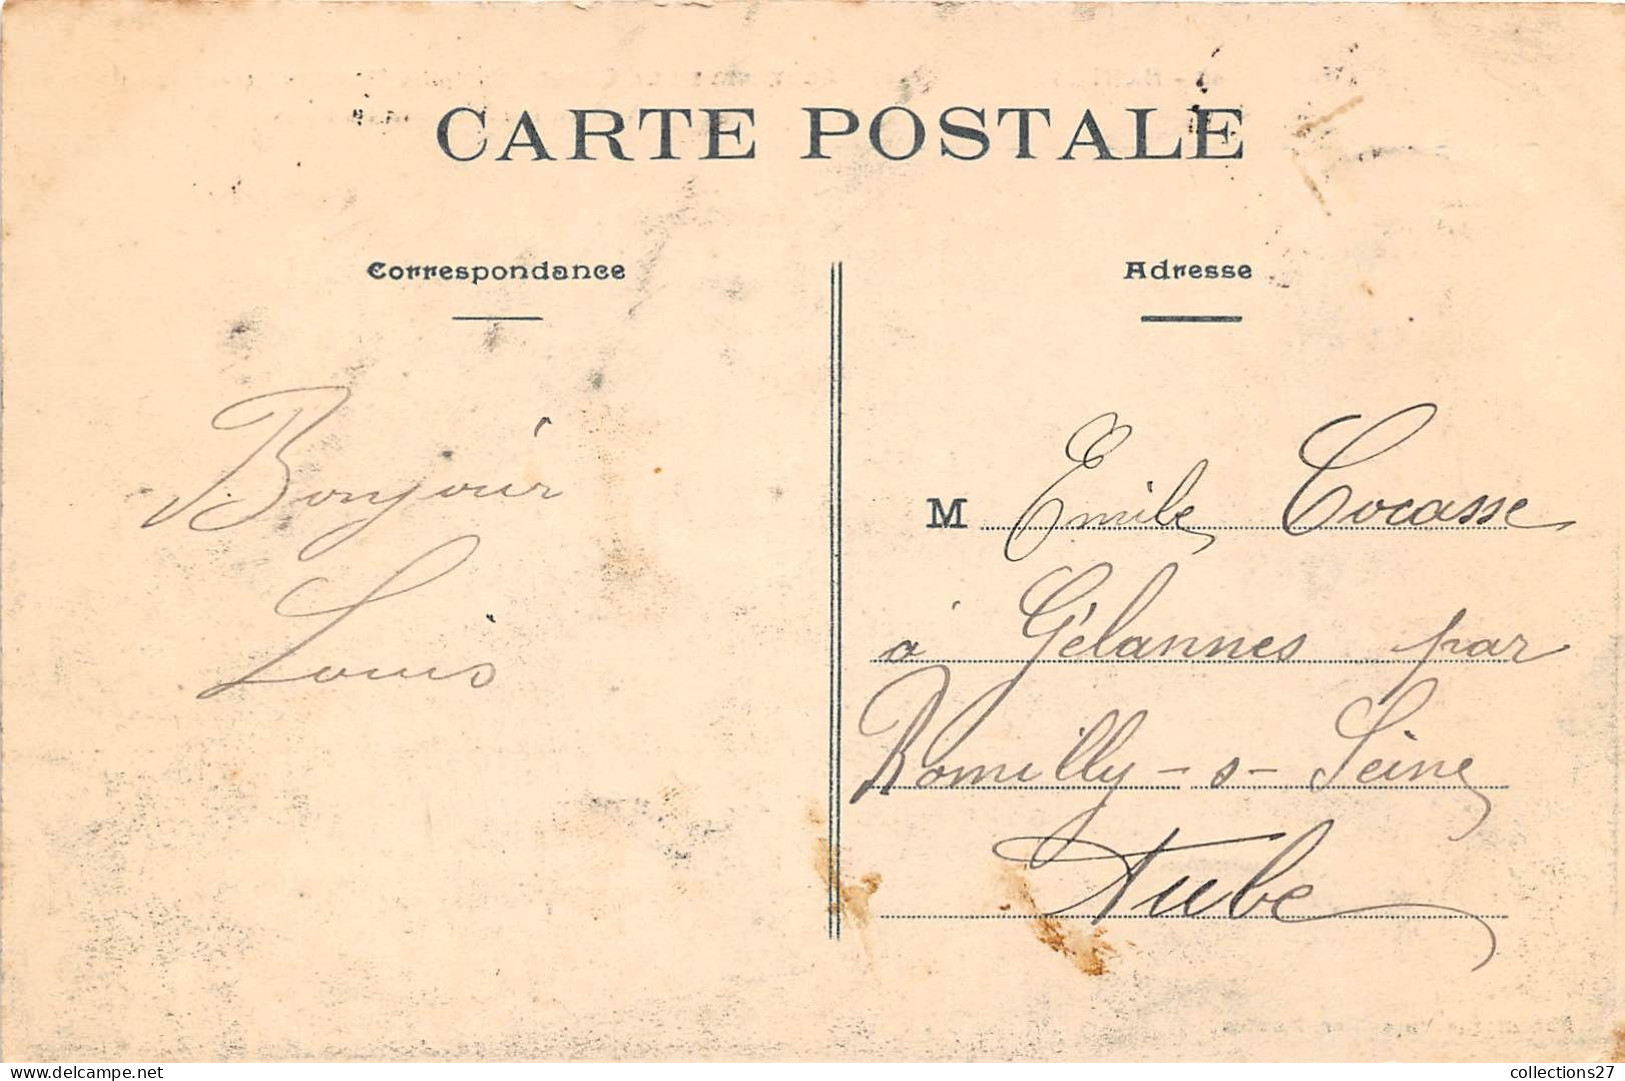 44-NANTES- SOUVENIR DE LA GRANDE SEMAINE MARITIME ( AOUT 1908 ) VUE DU PORT PENDANT LES FÊTES - Nantes